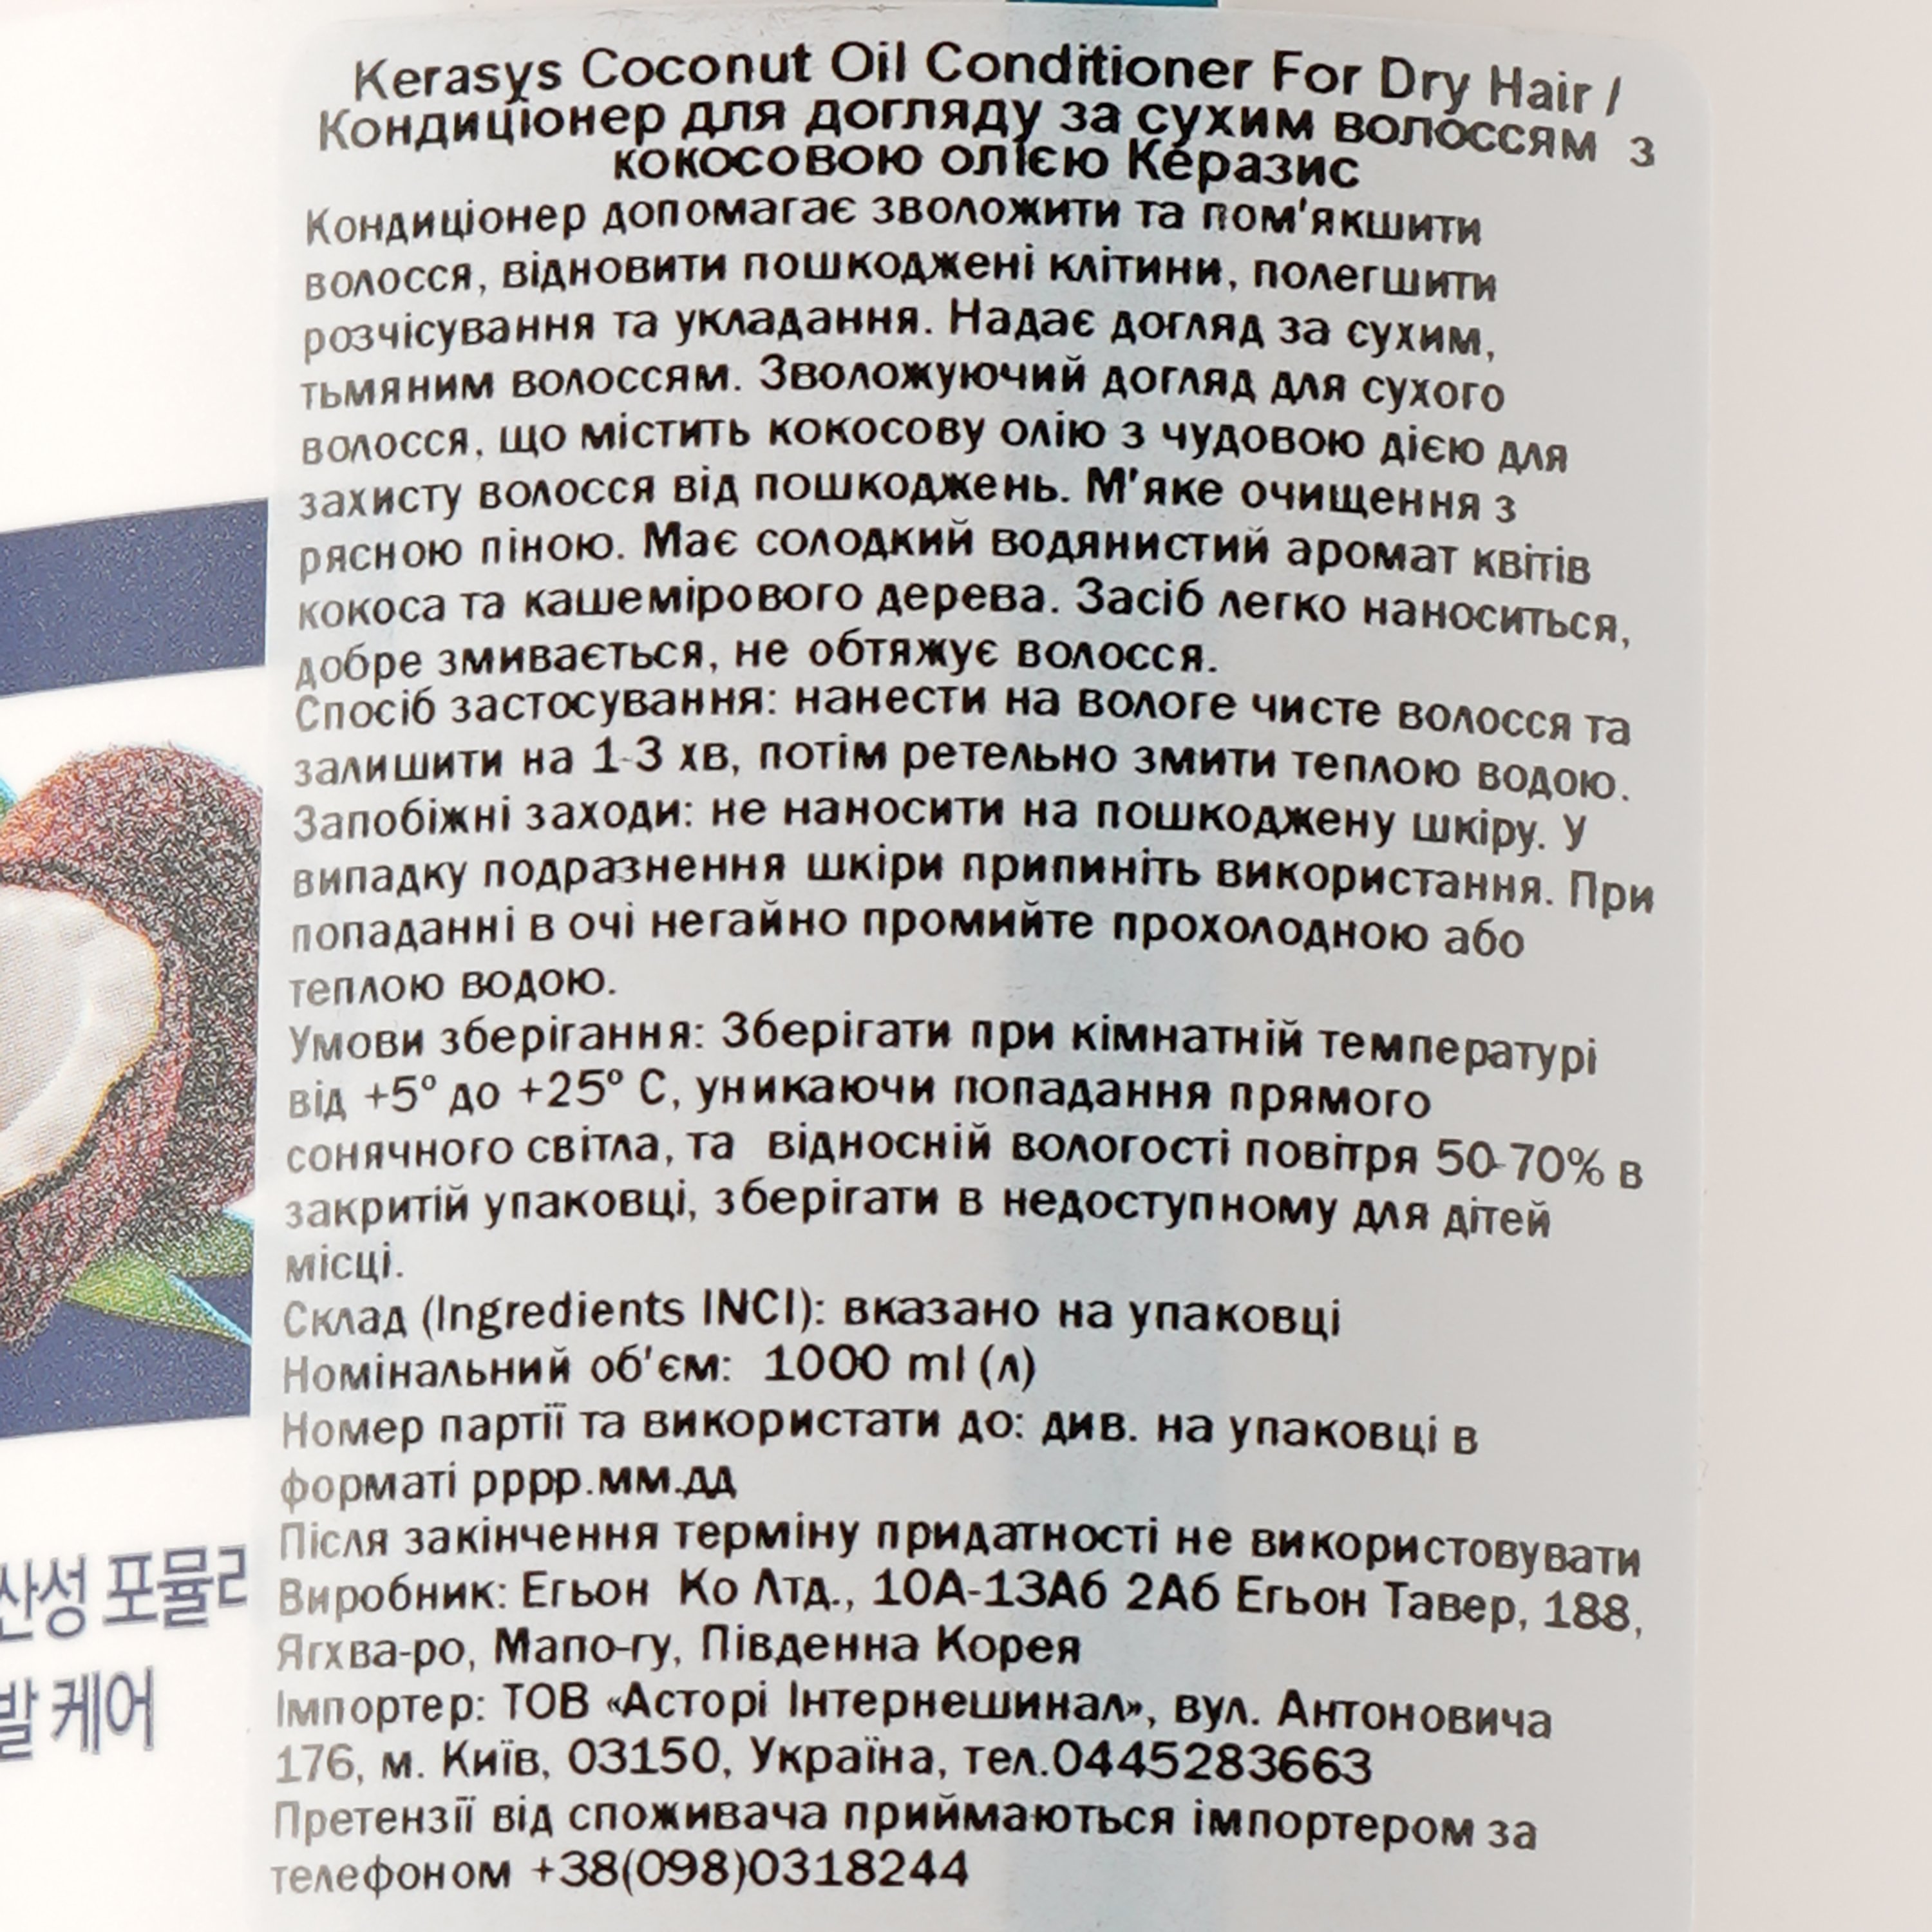 Кондиционер для ухода за сухими волосами Kerasys Coconut Oil Conditioner For Dry Hair с кокосовым маслом, 1000 мл - фото 3